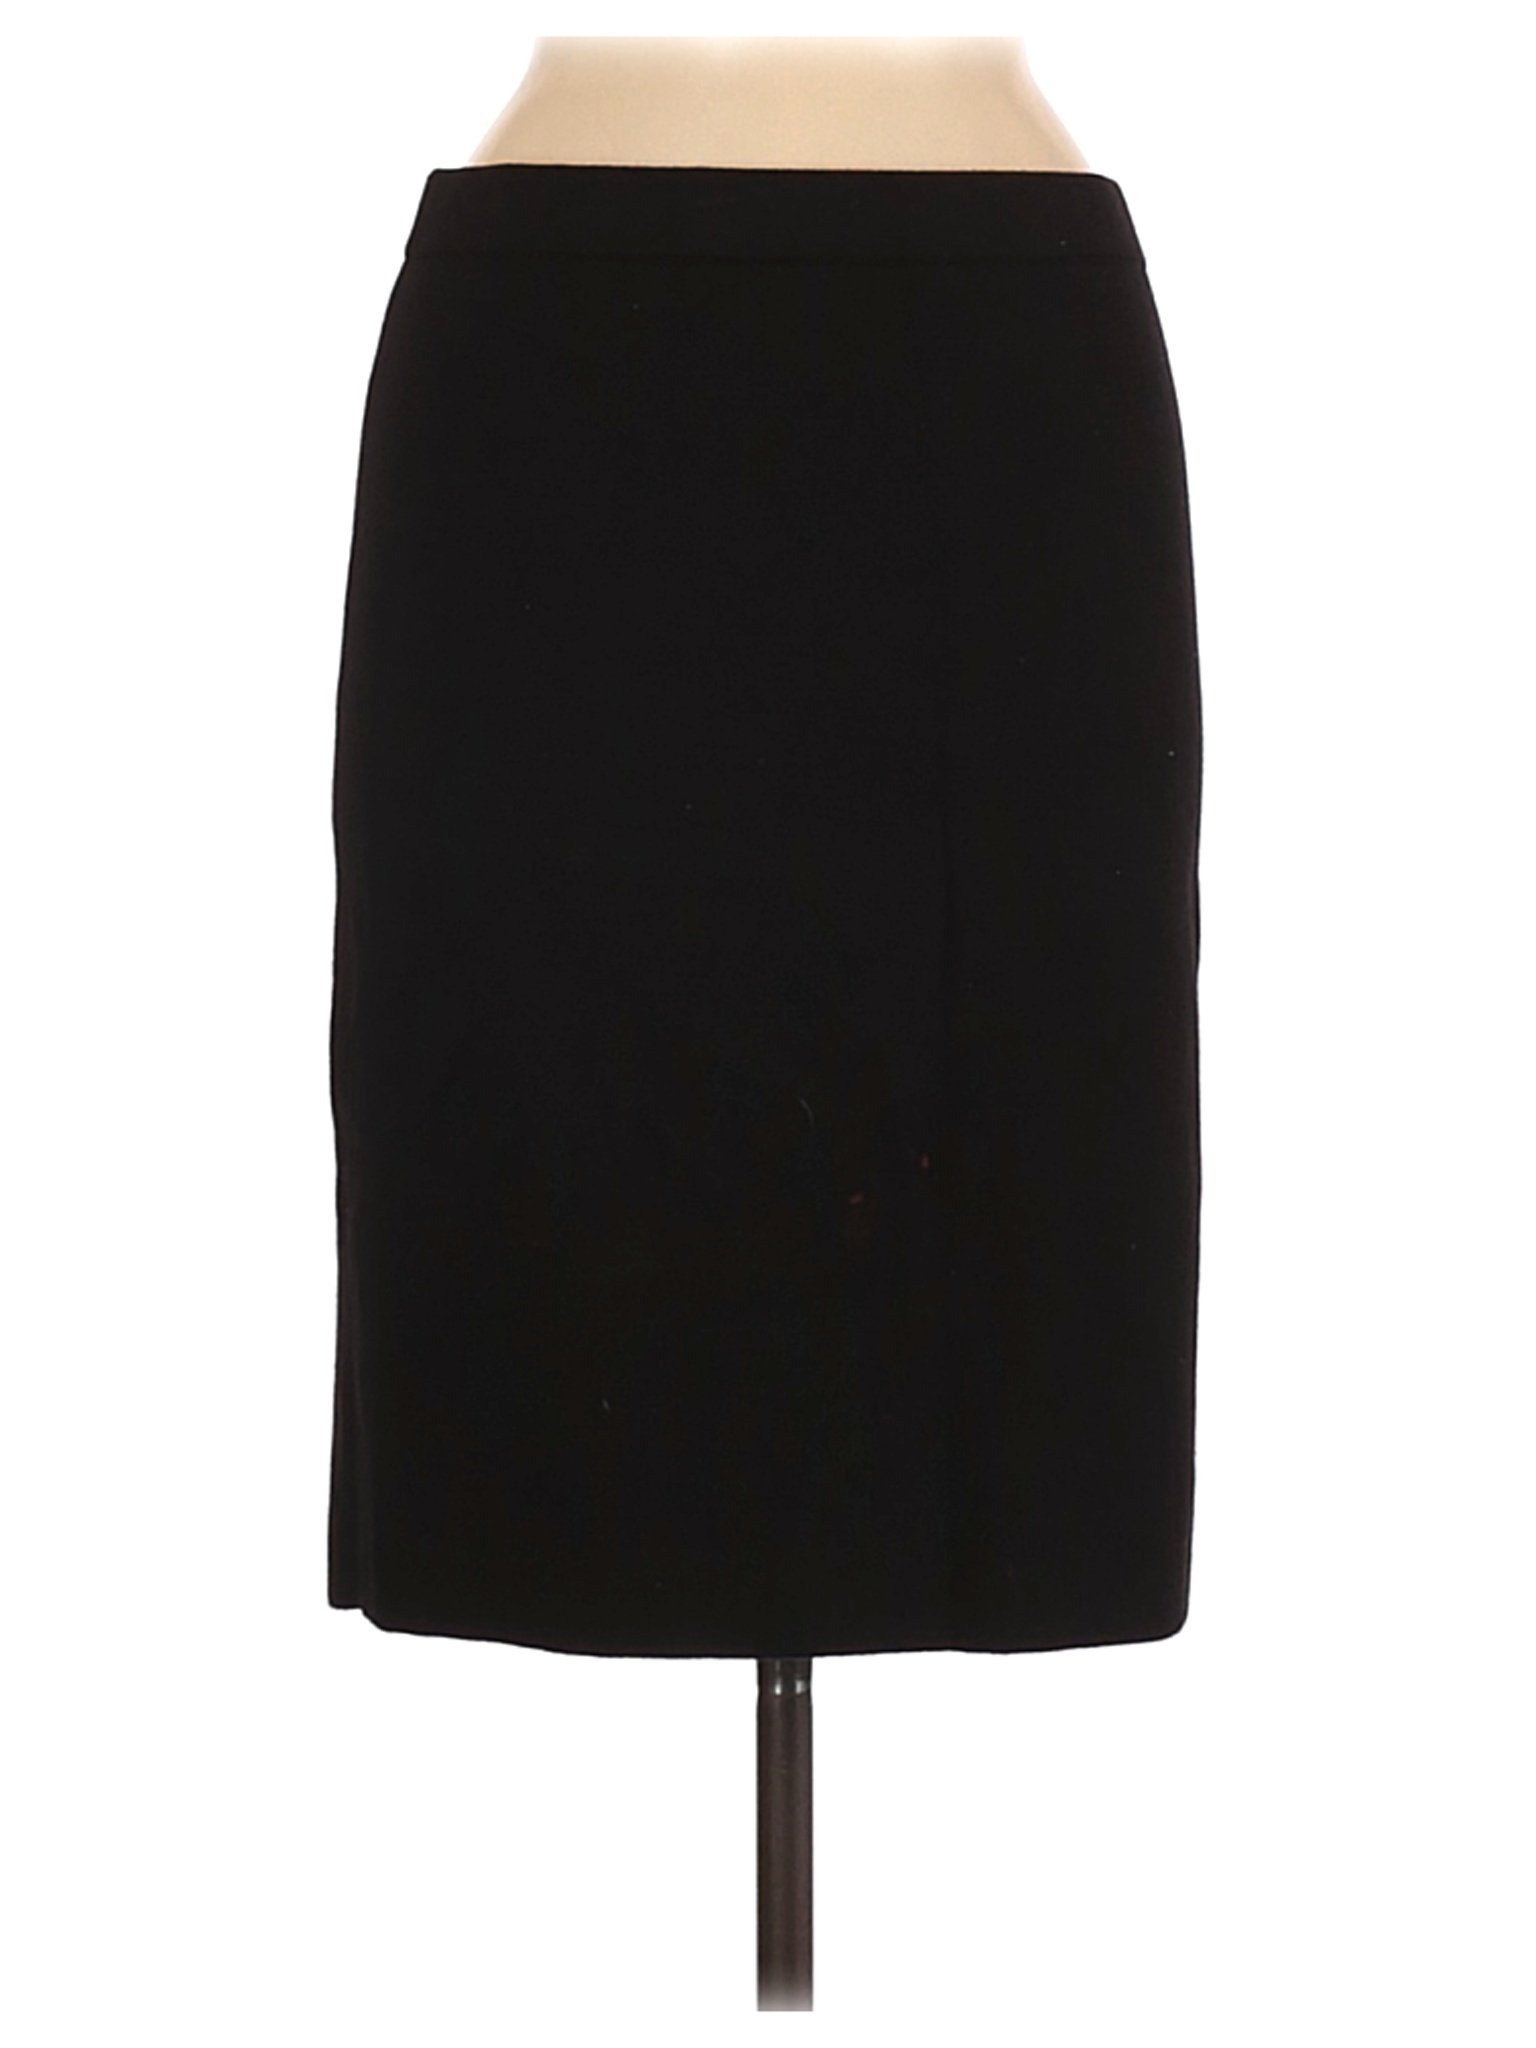 H&M Women Black Casual Skirt M | eBay